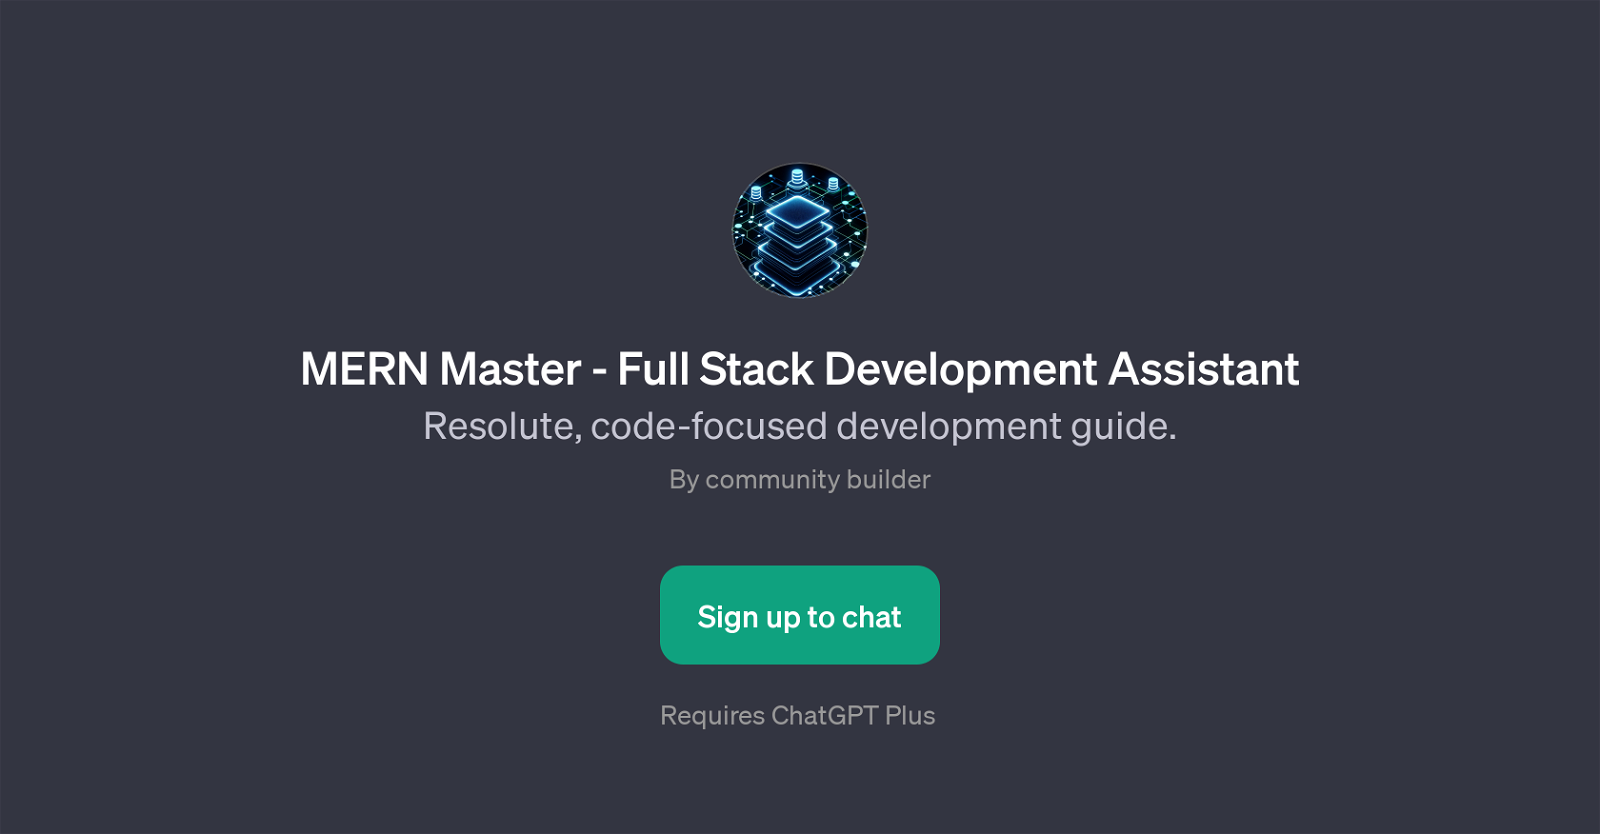 MERN Master - Full Stack Development Assistant website